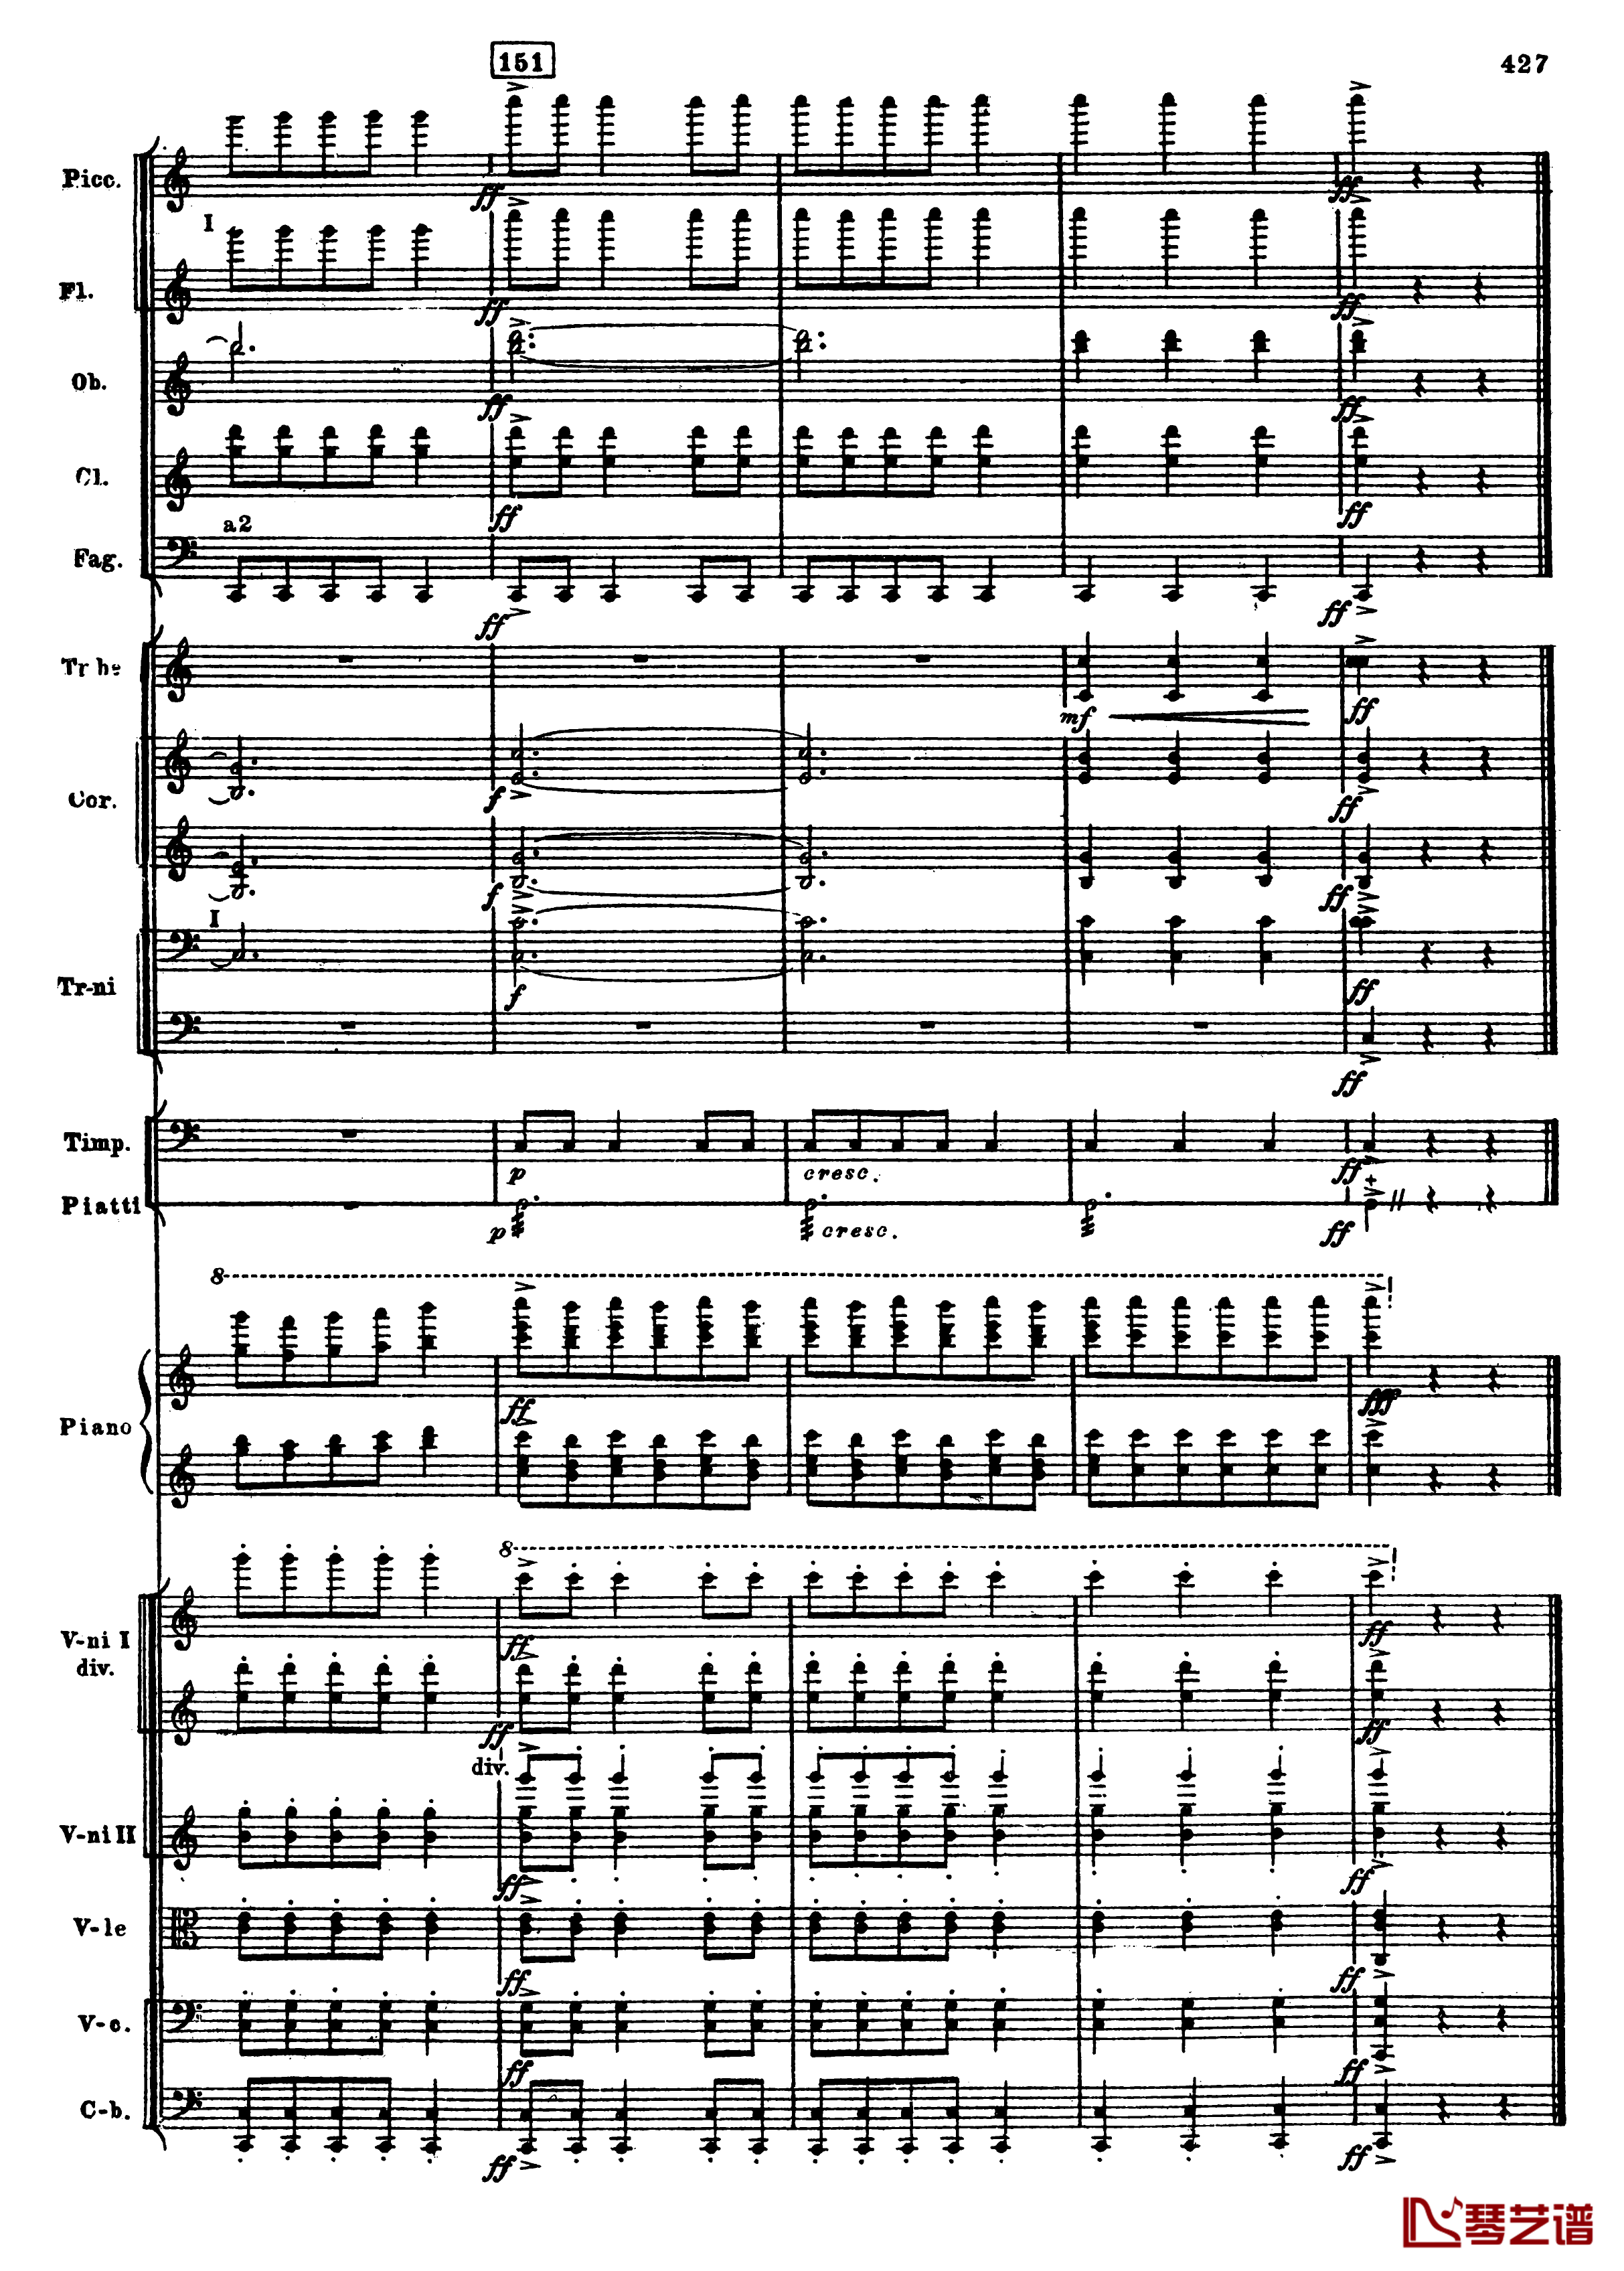 普罗科菲耶夫第三钢琴协奏曲钢琴谱-总谱-普罗科非耶夫159